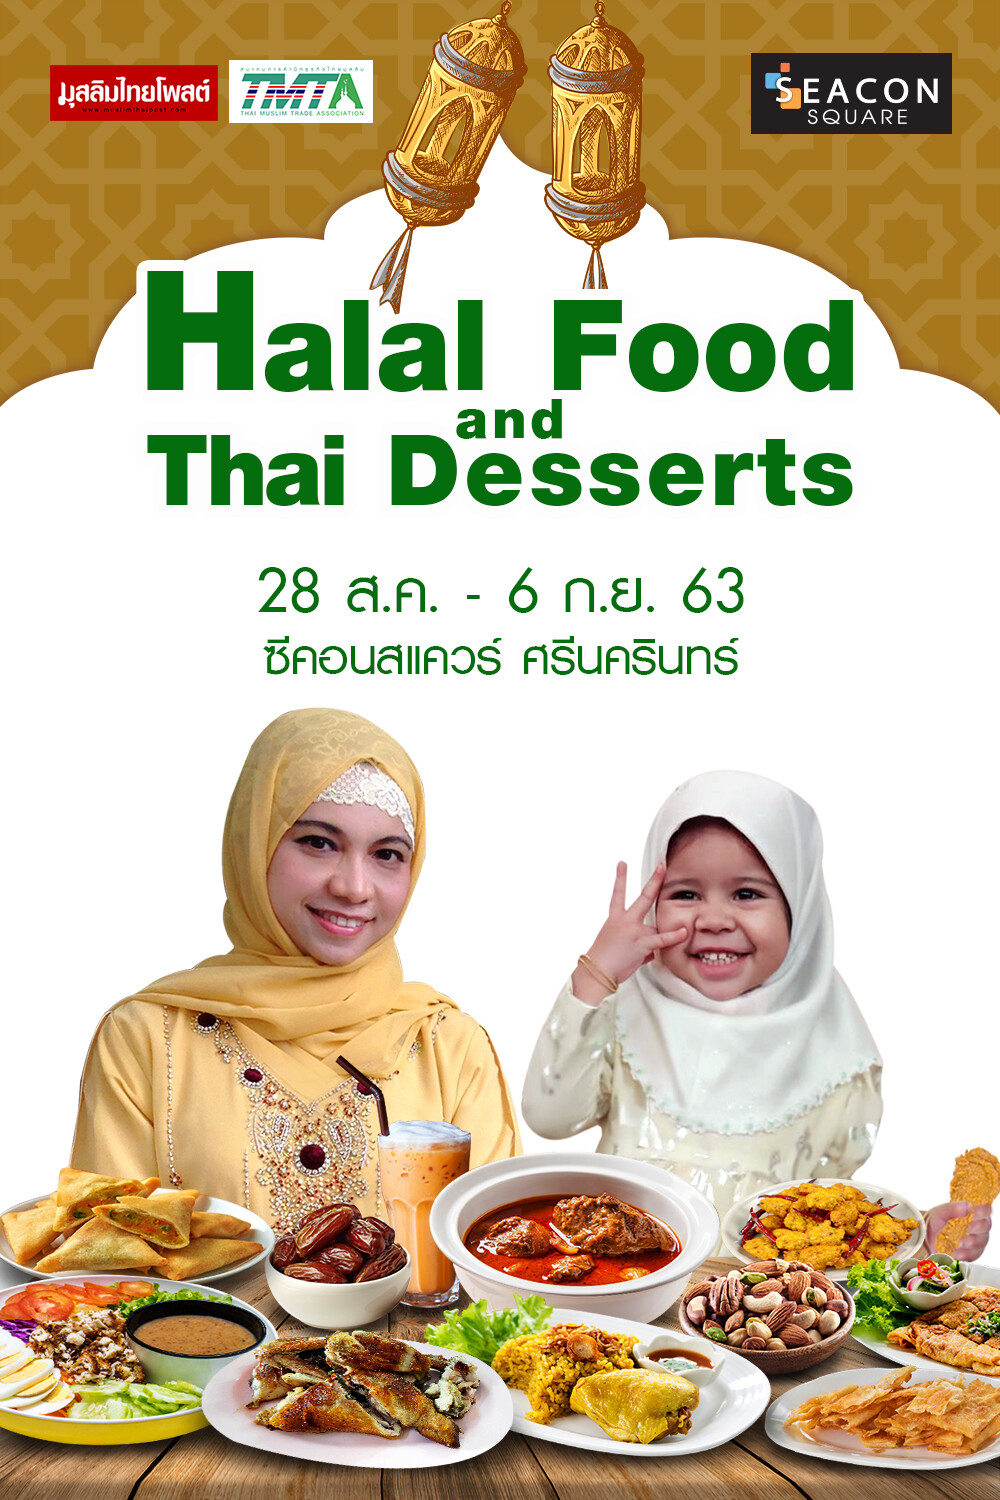 “ซีคอนสแควร์” จัดงาน “Halal Food and Thai Desserts” เสิร์ฟสารพัดเมนูอาหารฮาลาลครั้งใหญ่แห่งปี